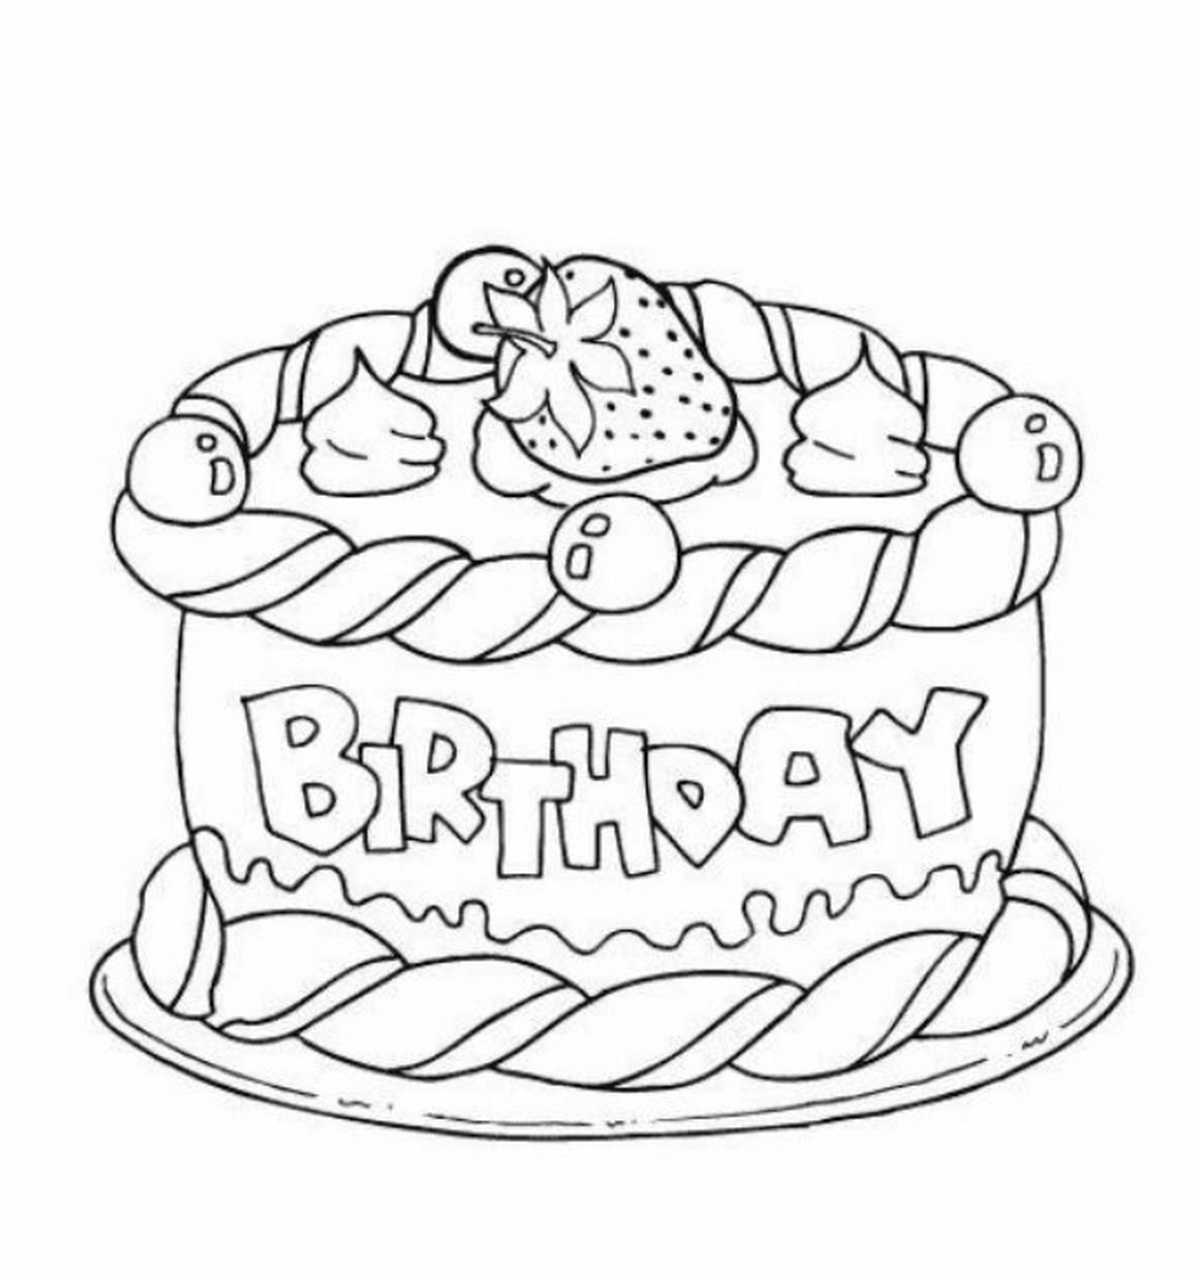 复杂的生日蛋糕怎么画图片